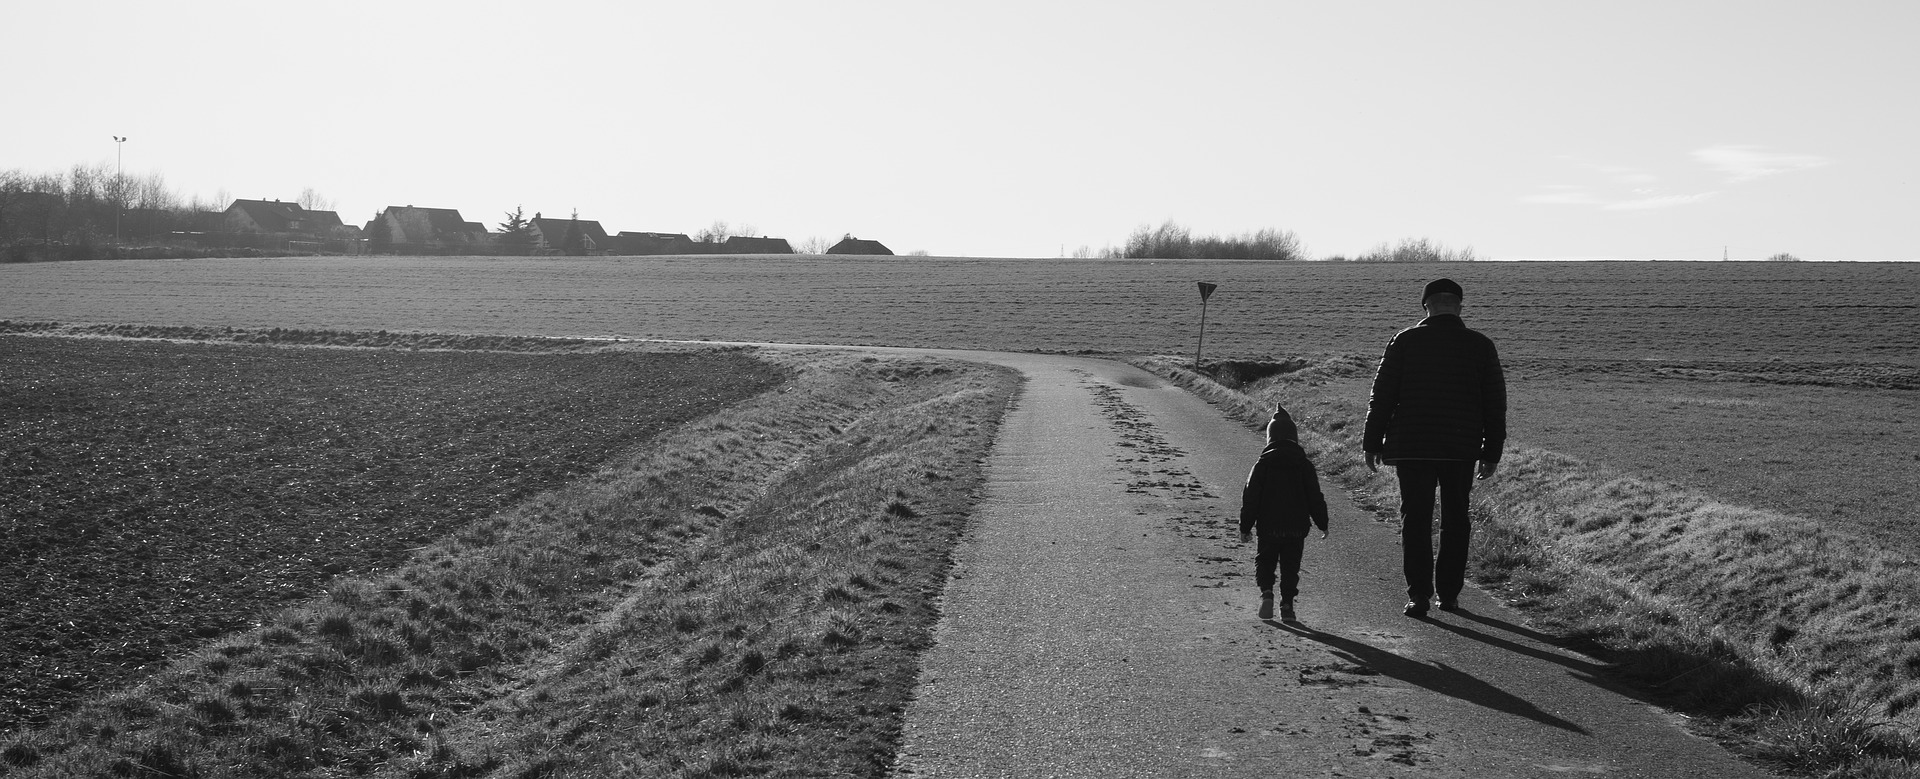 En bild som visar himmel, ängsmark, en äldre man och barn som går längs en väg